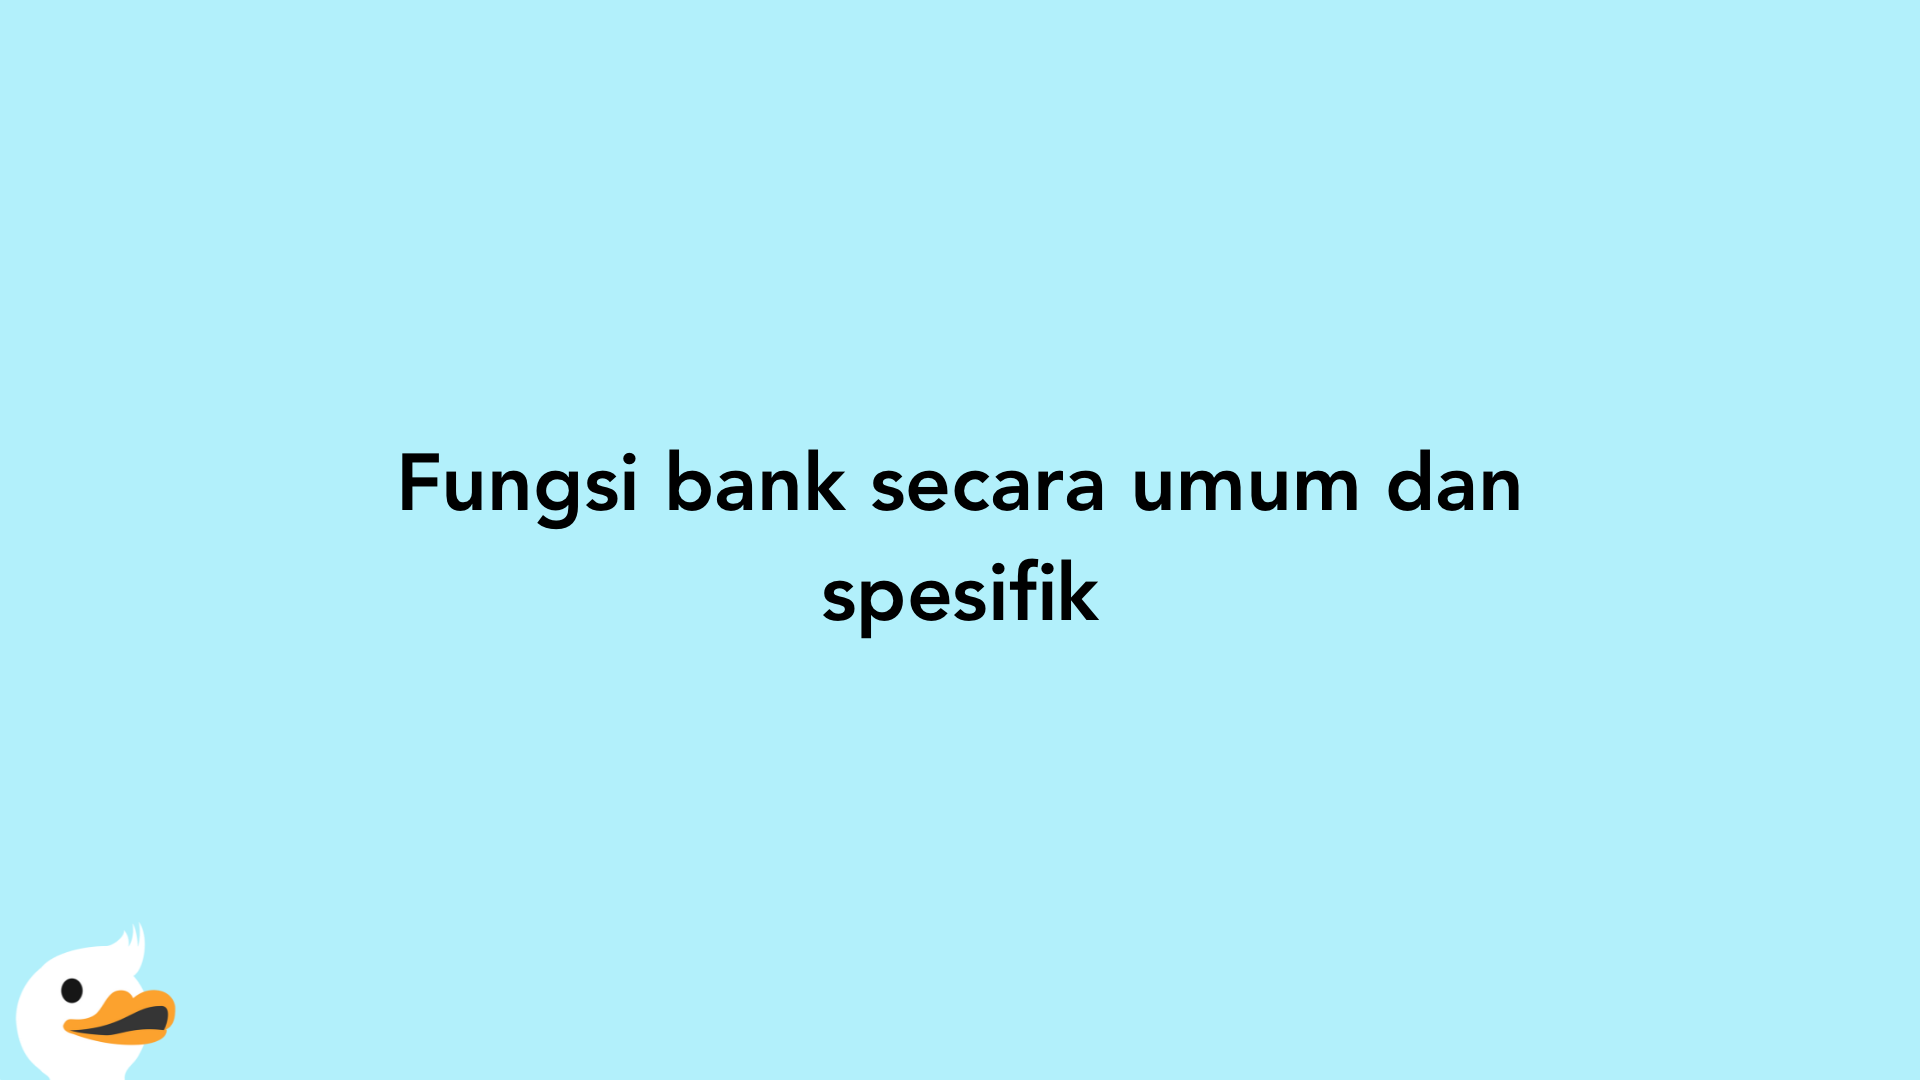 Fungsi bank secara umum dan spesifik